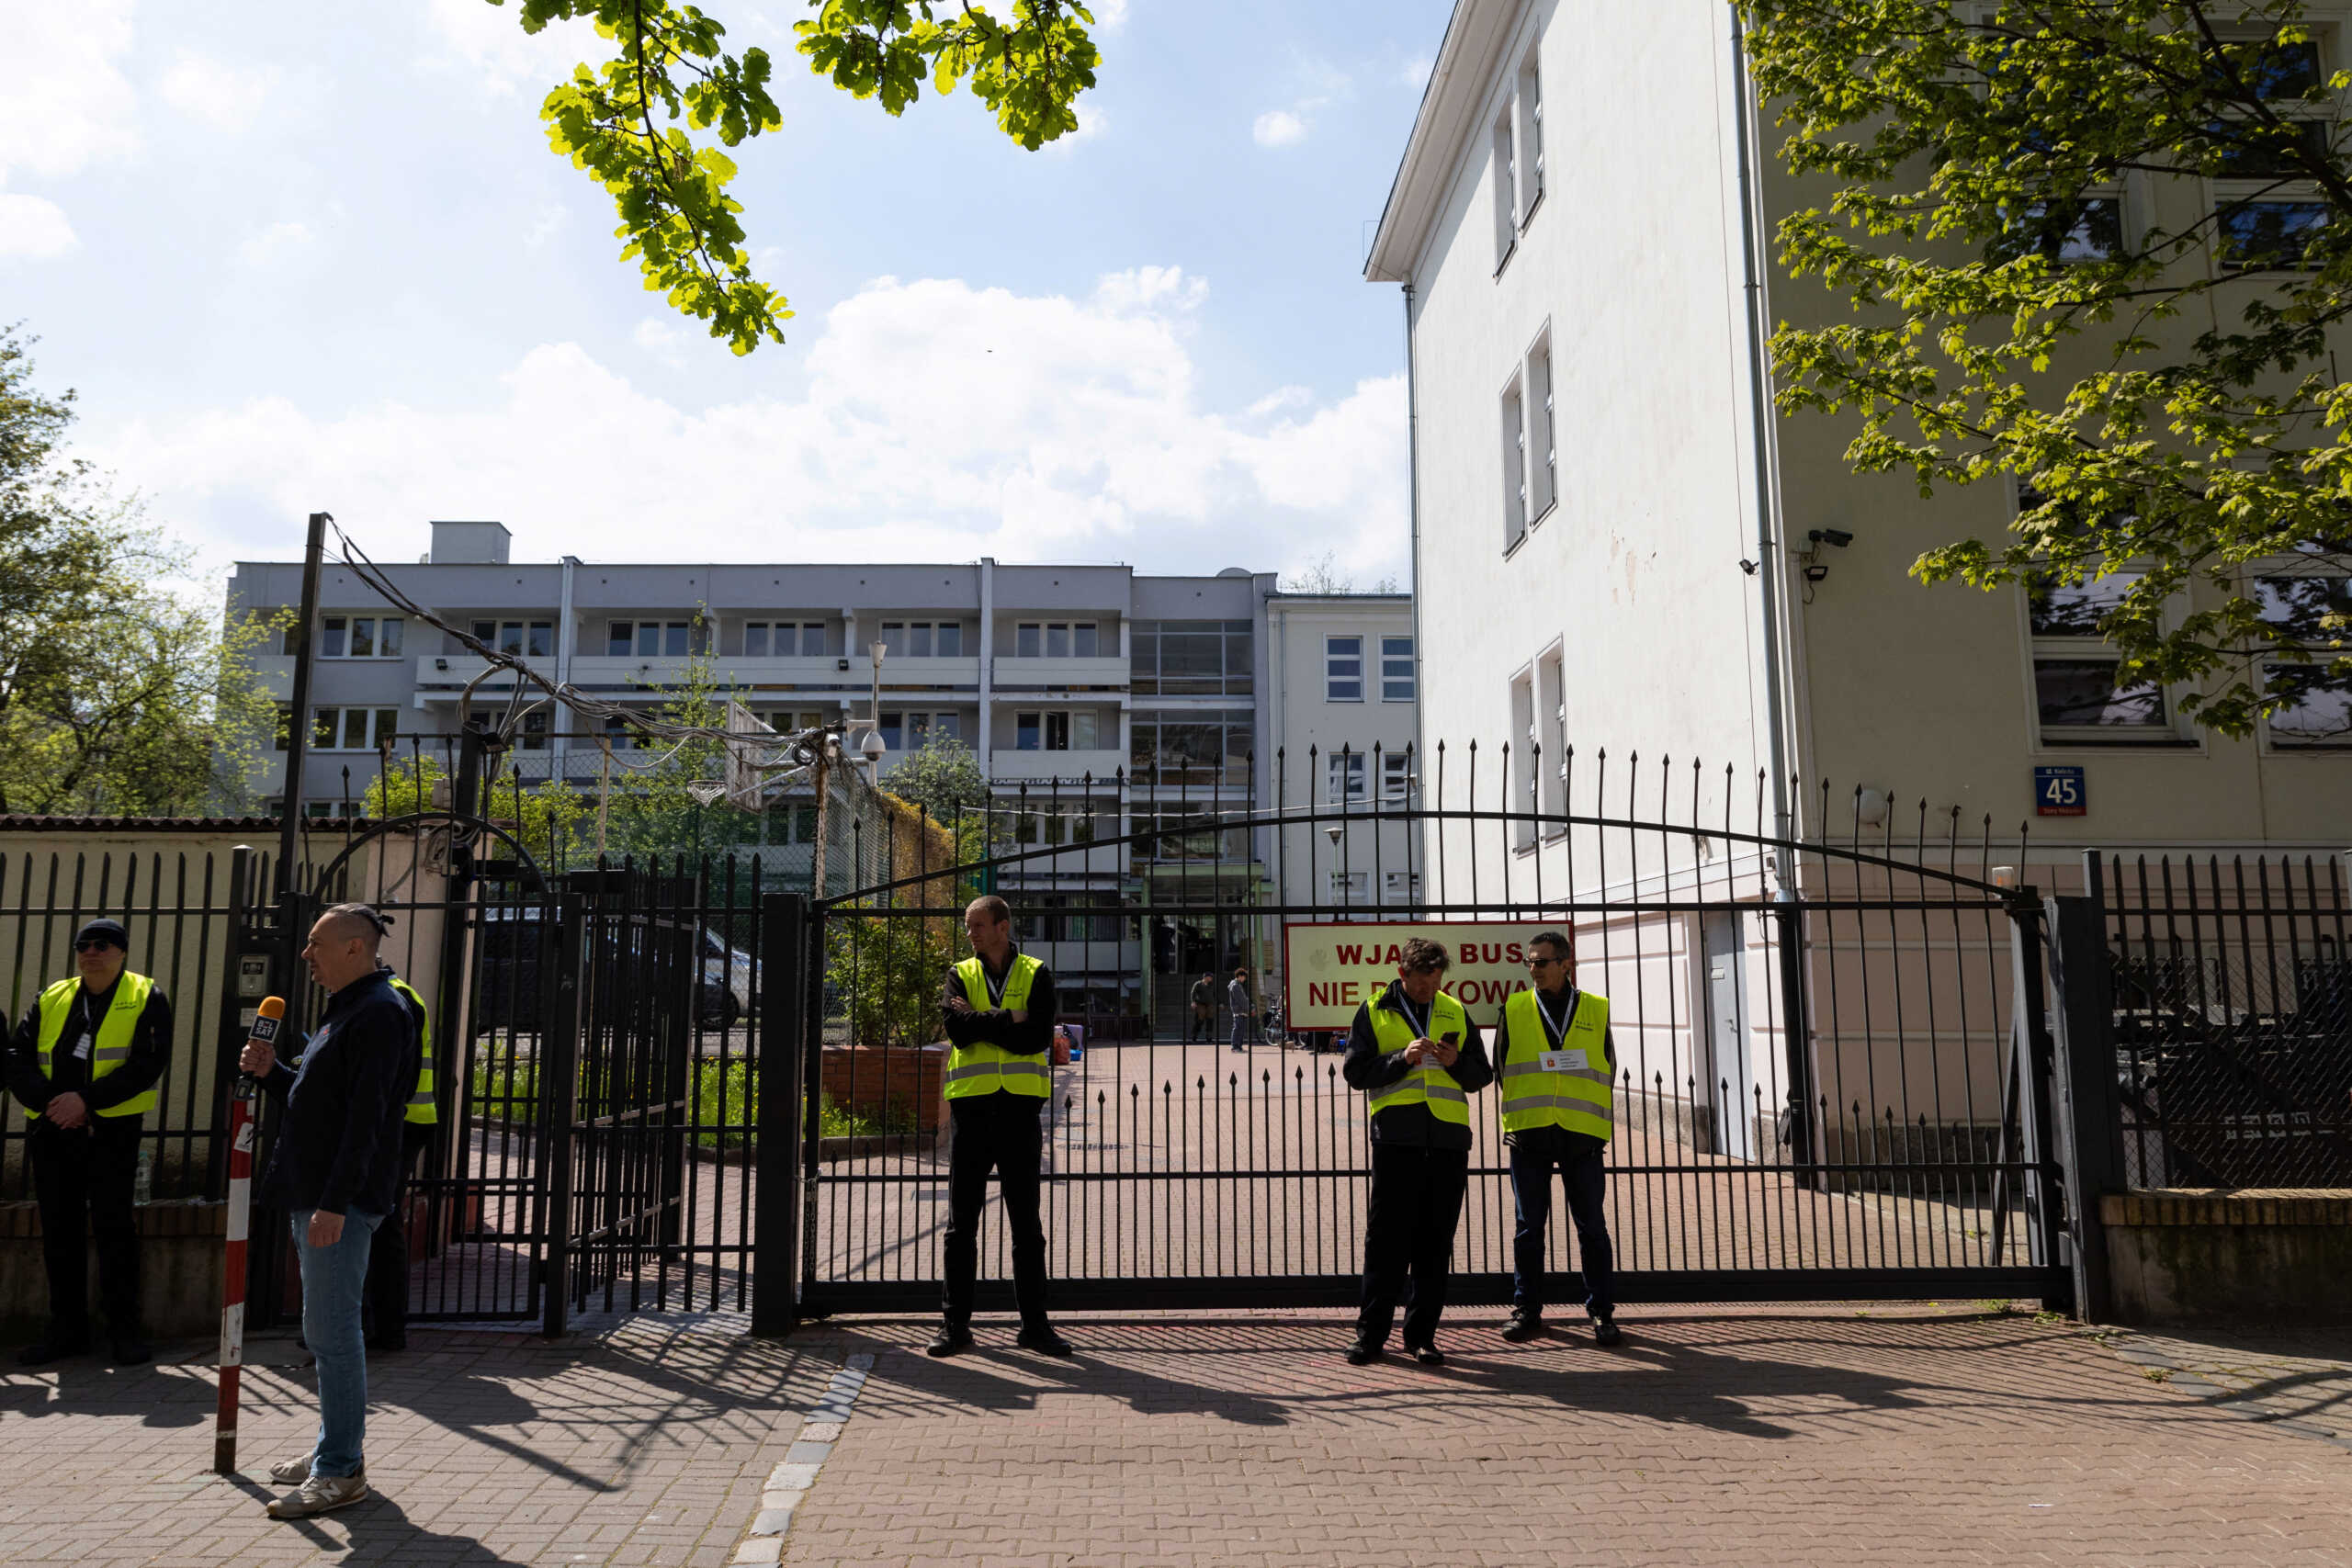 Η Ρωσία θα υποβάλλει επίσημη διαμαρτυρία για την κατάληψη του σχολείου της πρεσβείας της στην Πολωνία